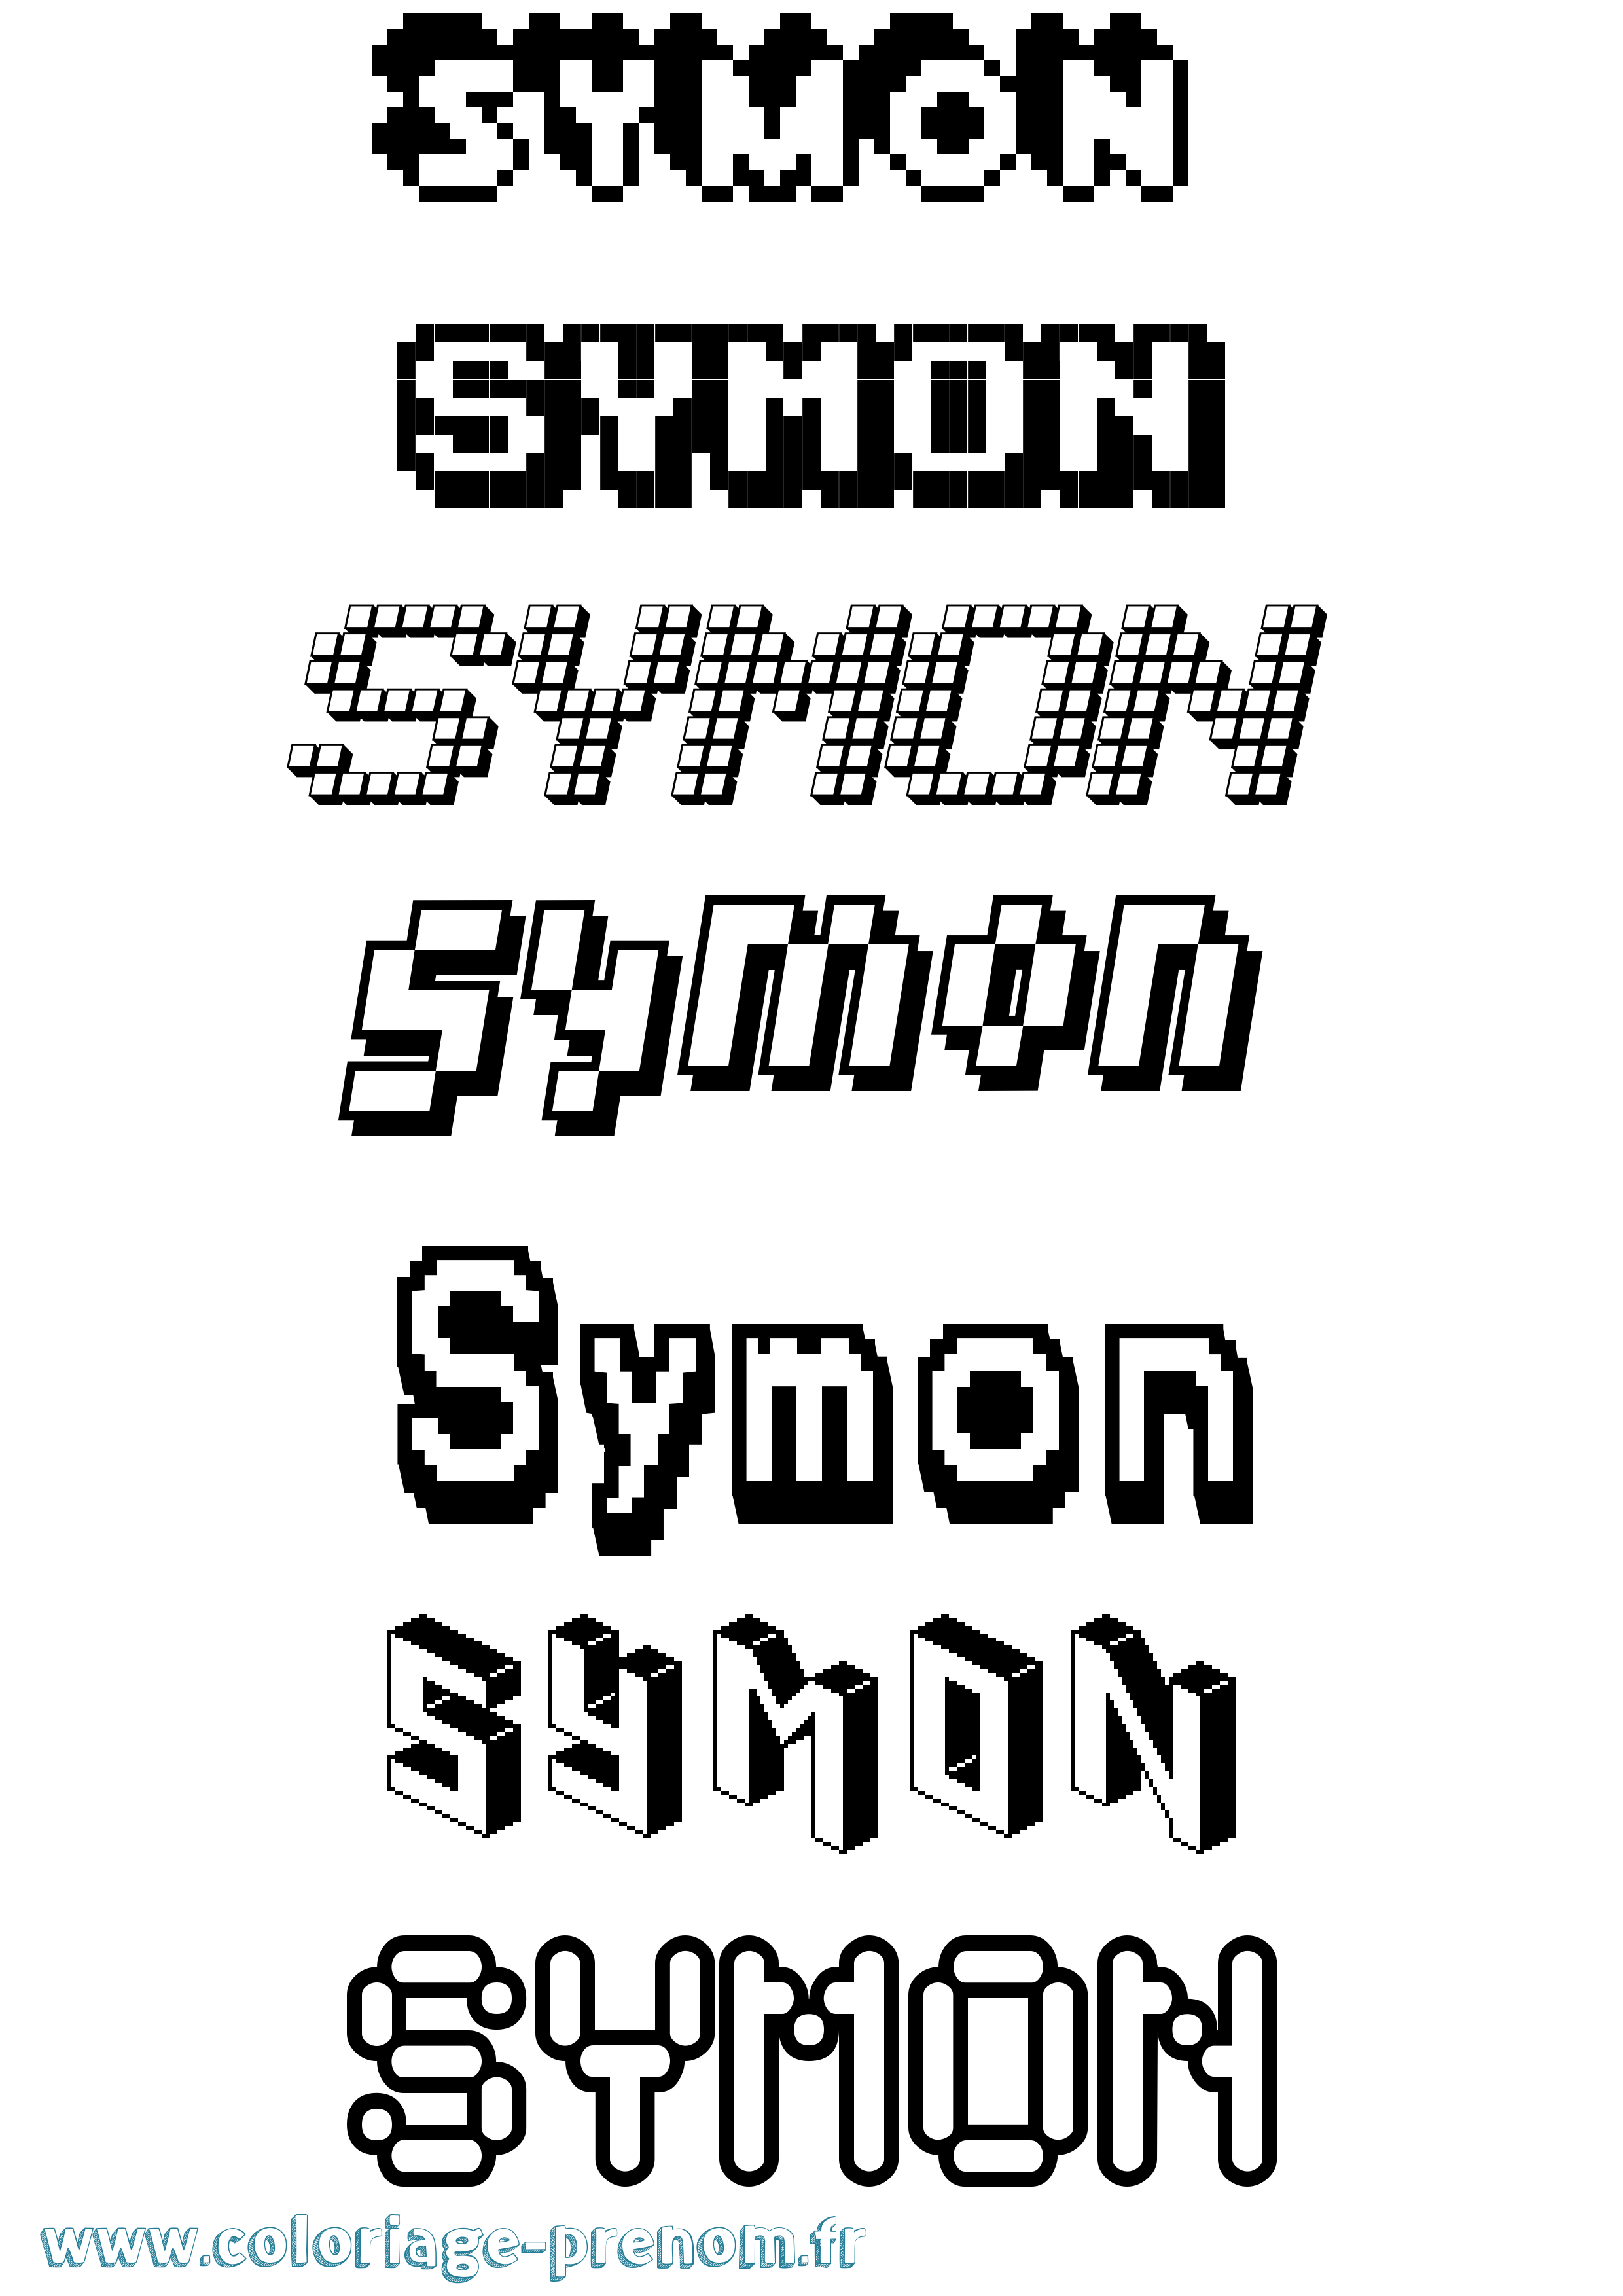 Coloriage prénom Symon Pixel